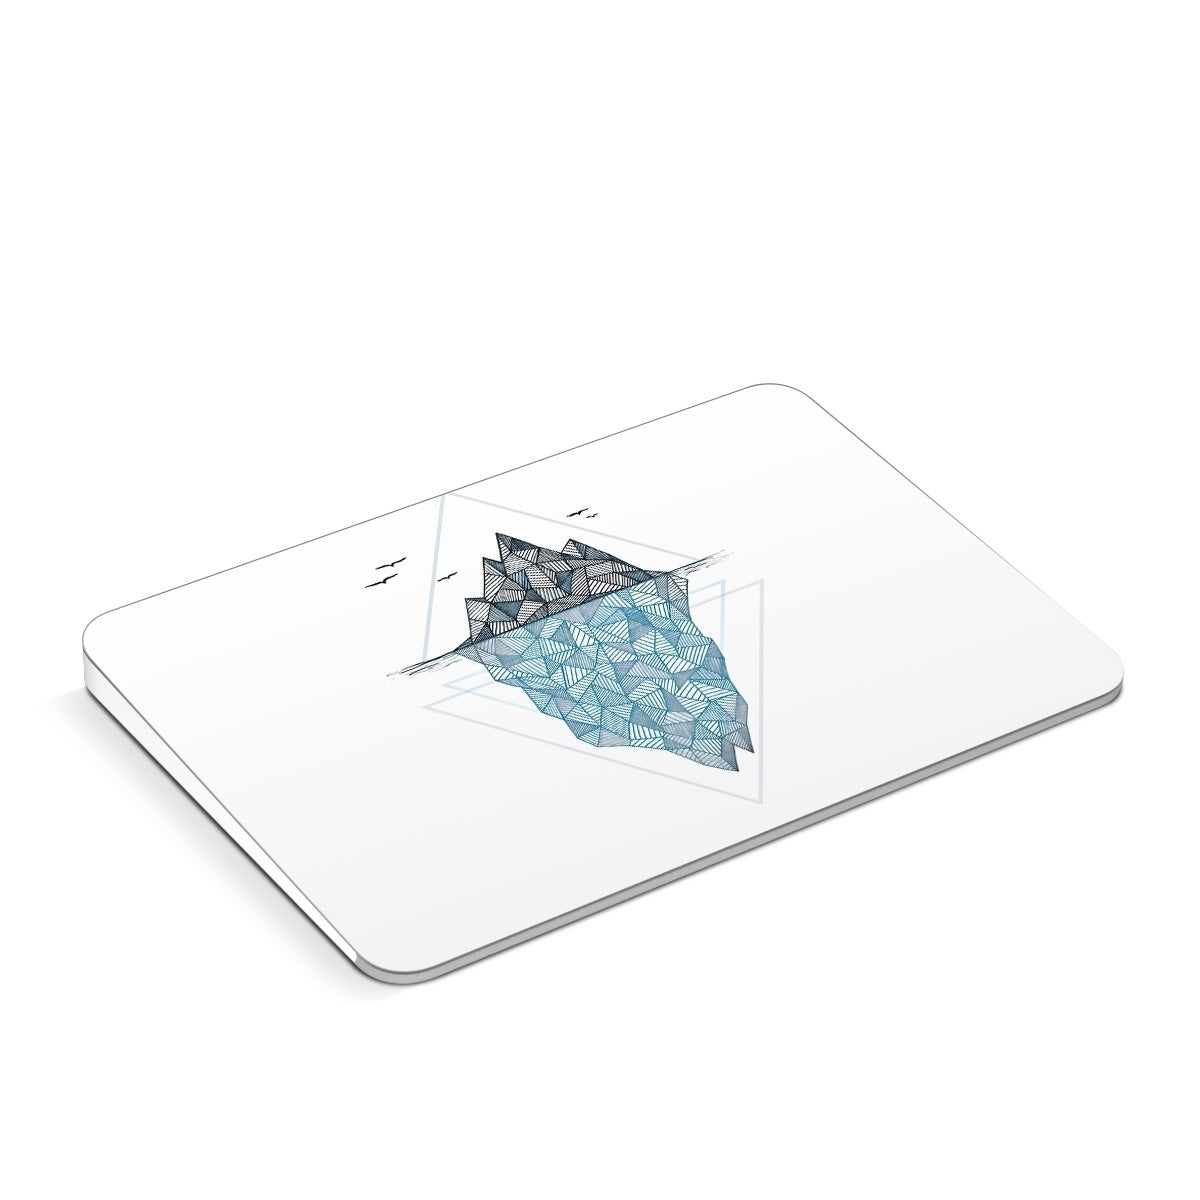 Iceberg - Apple Magic Trackpad Skin